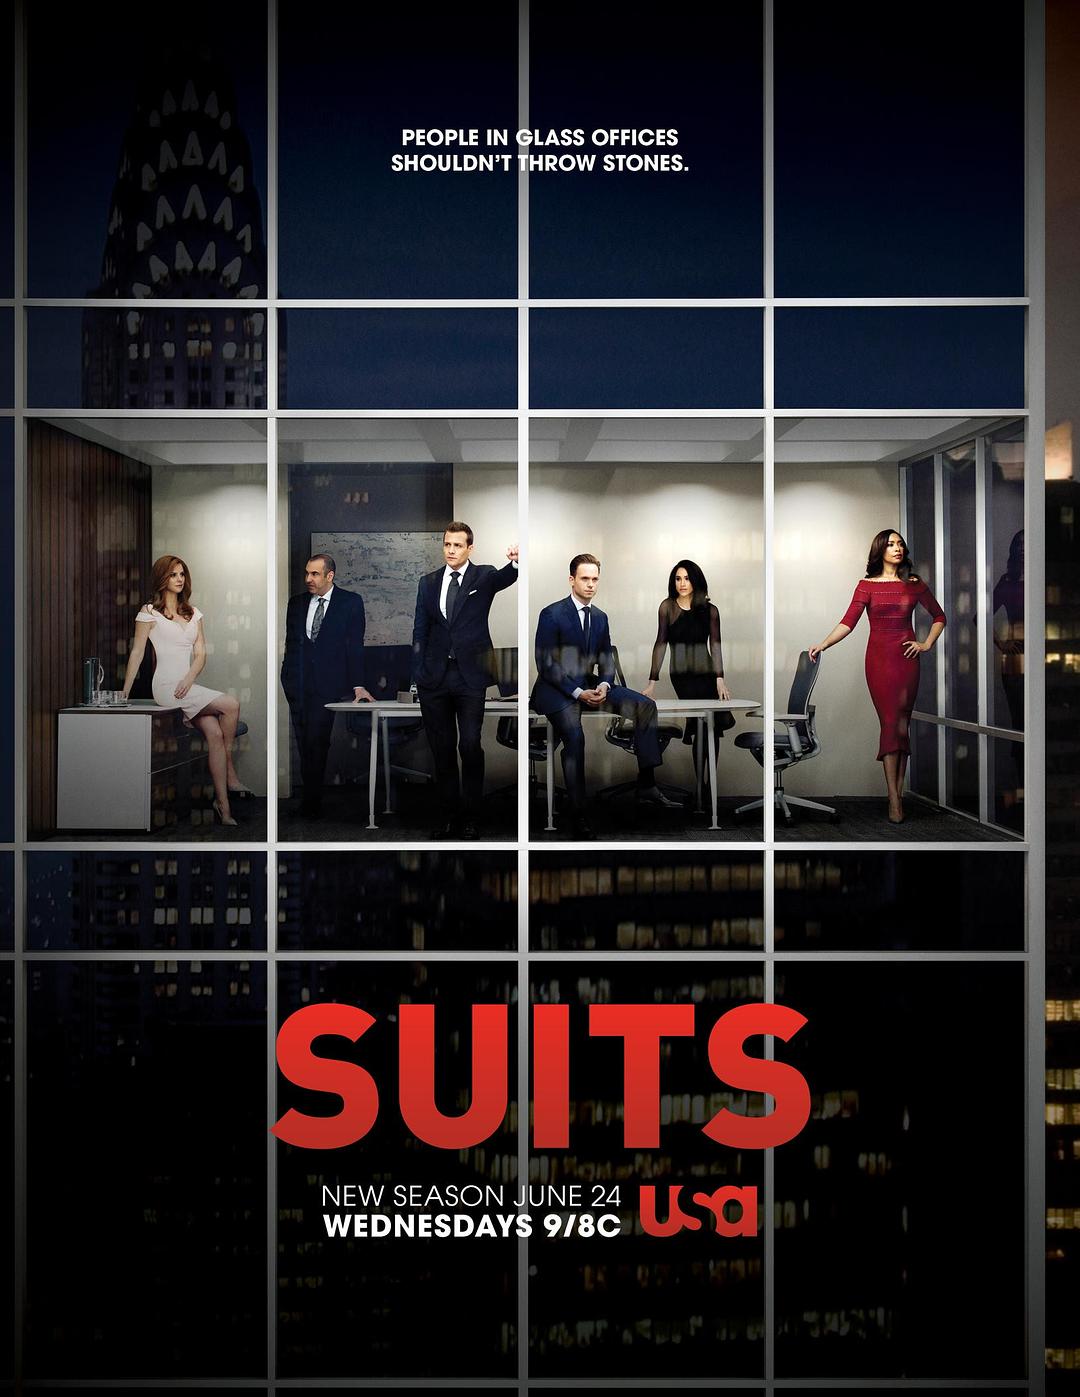 金装律师 第五季 Suits Season 5